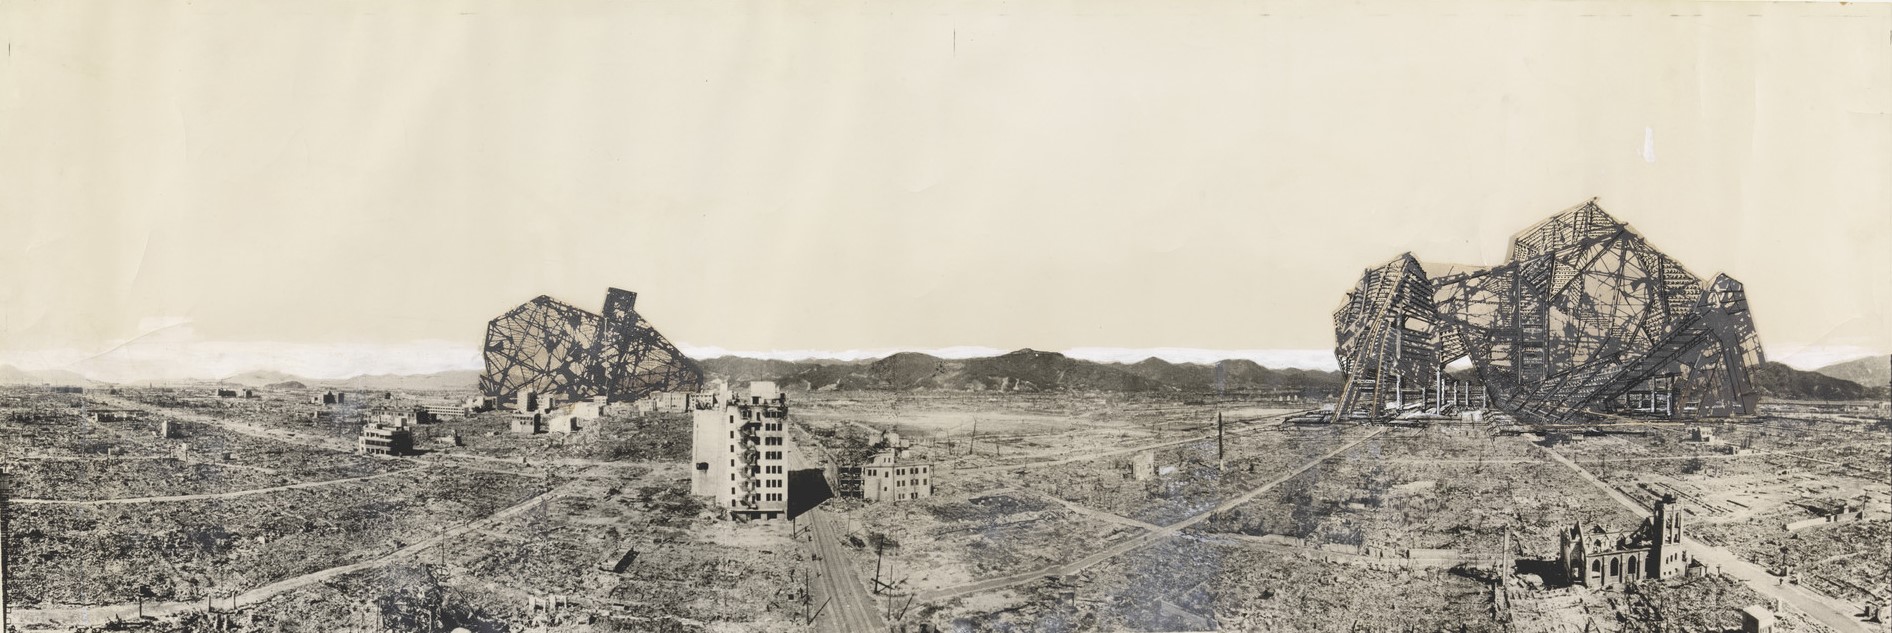 矶崎新，“再次变成废墟的广岛”拼贴，1968 ©MoMA